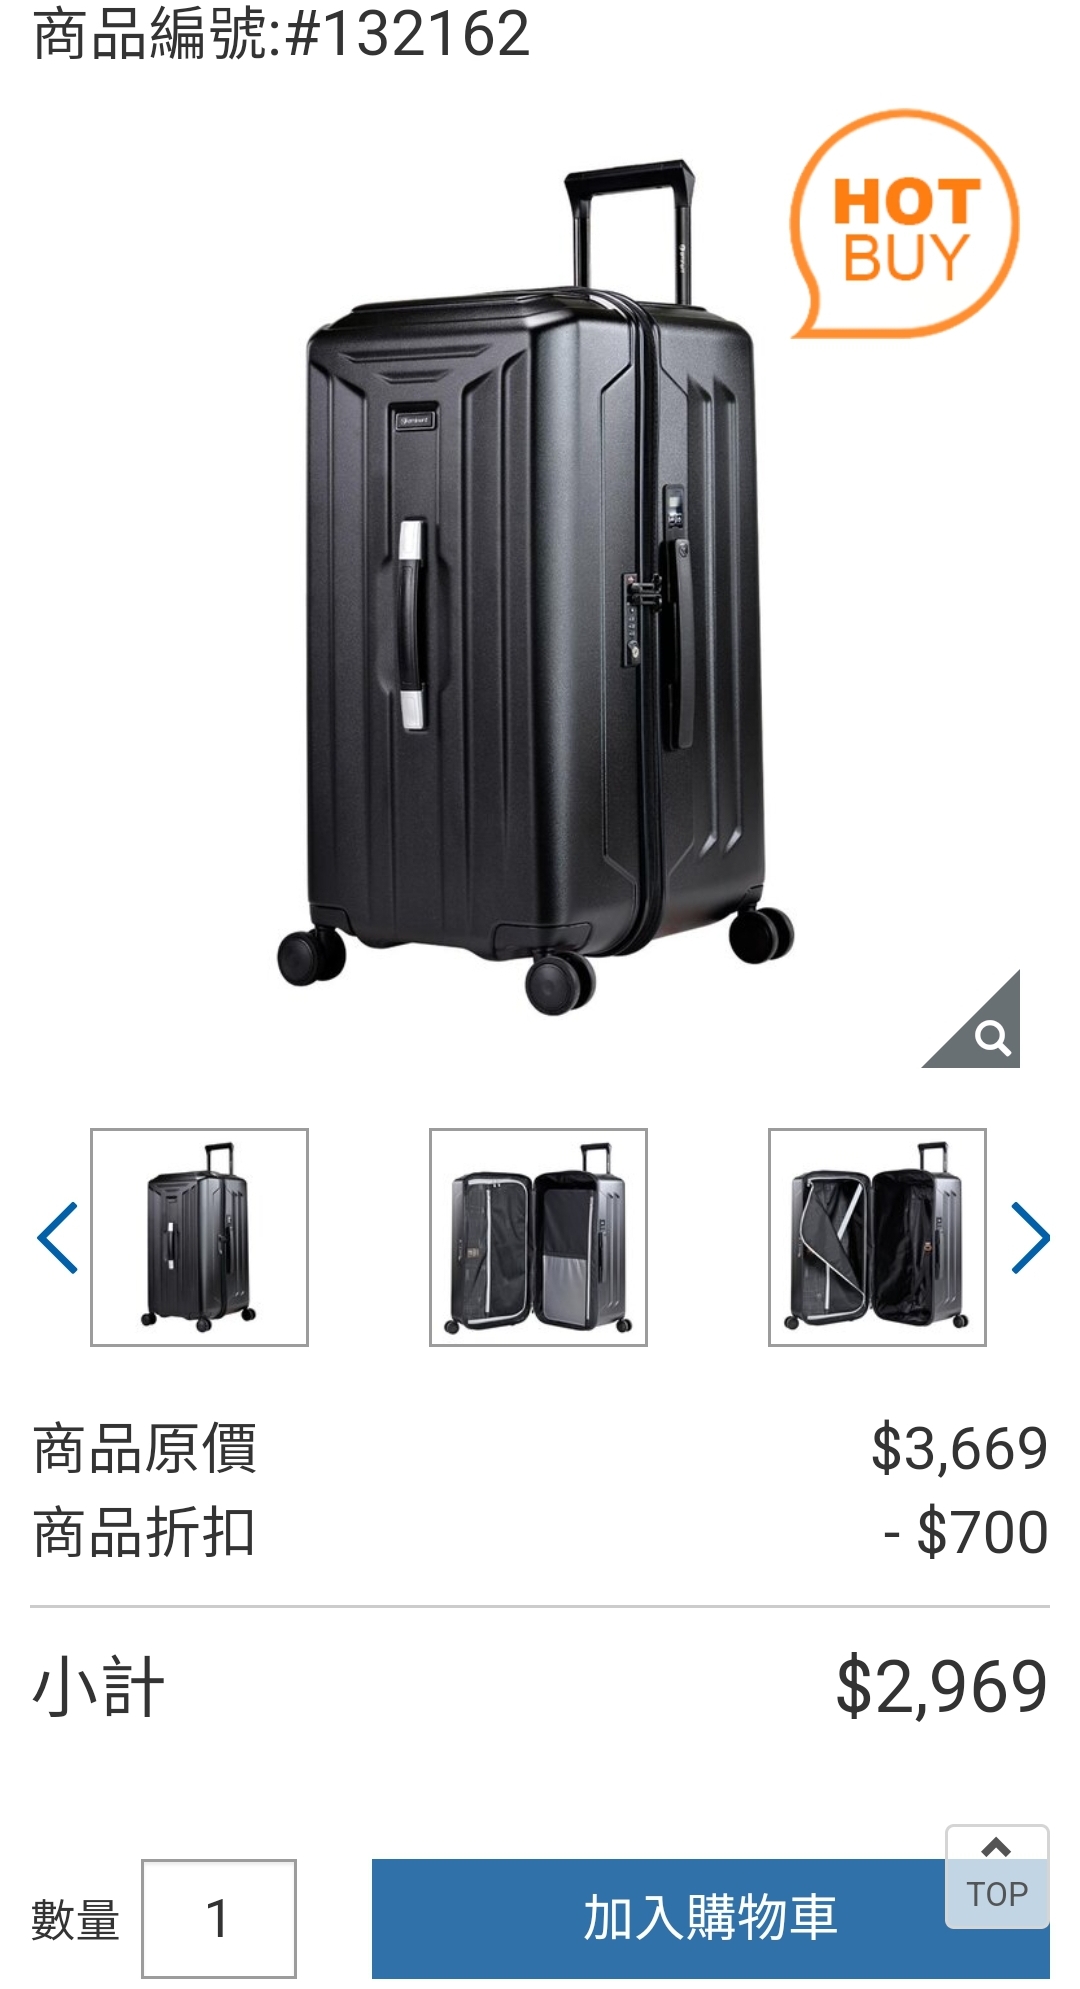 [情報] 萬國 Eminent 26吋行李箱 2969元 好市多